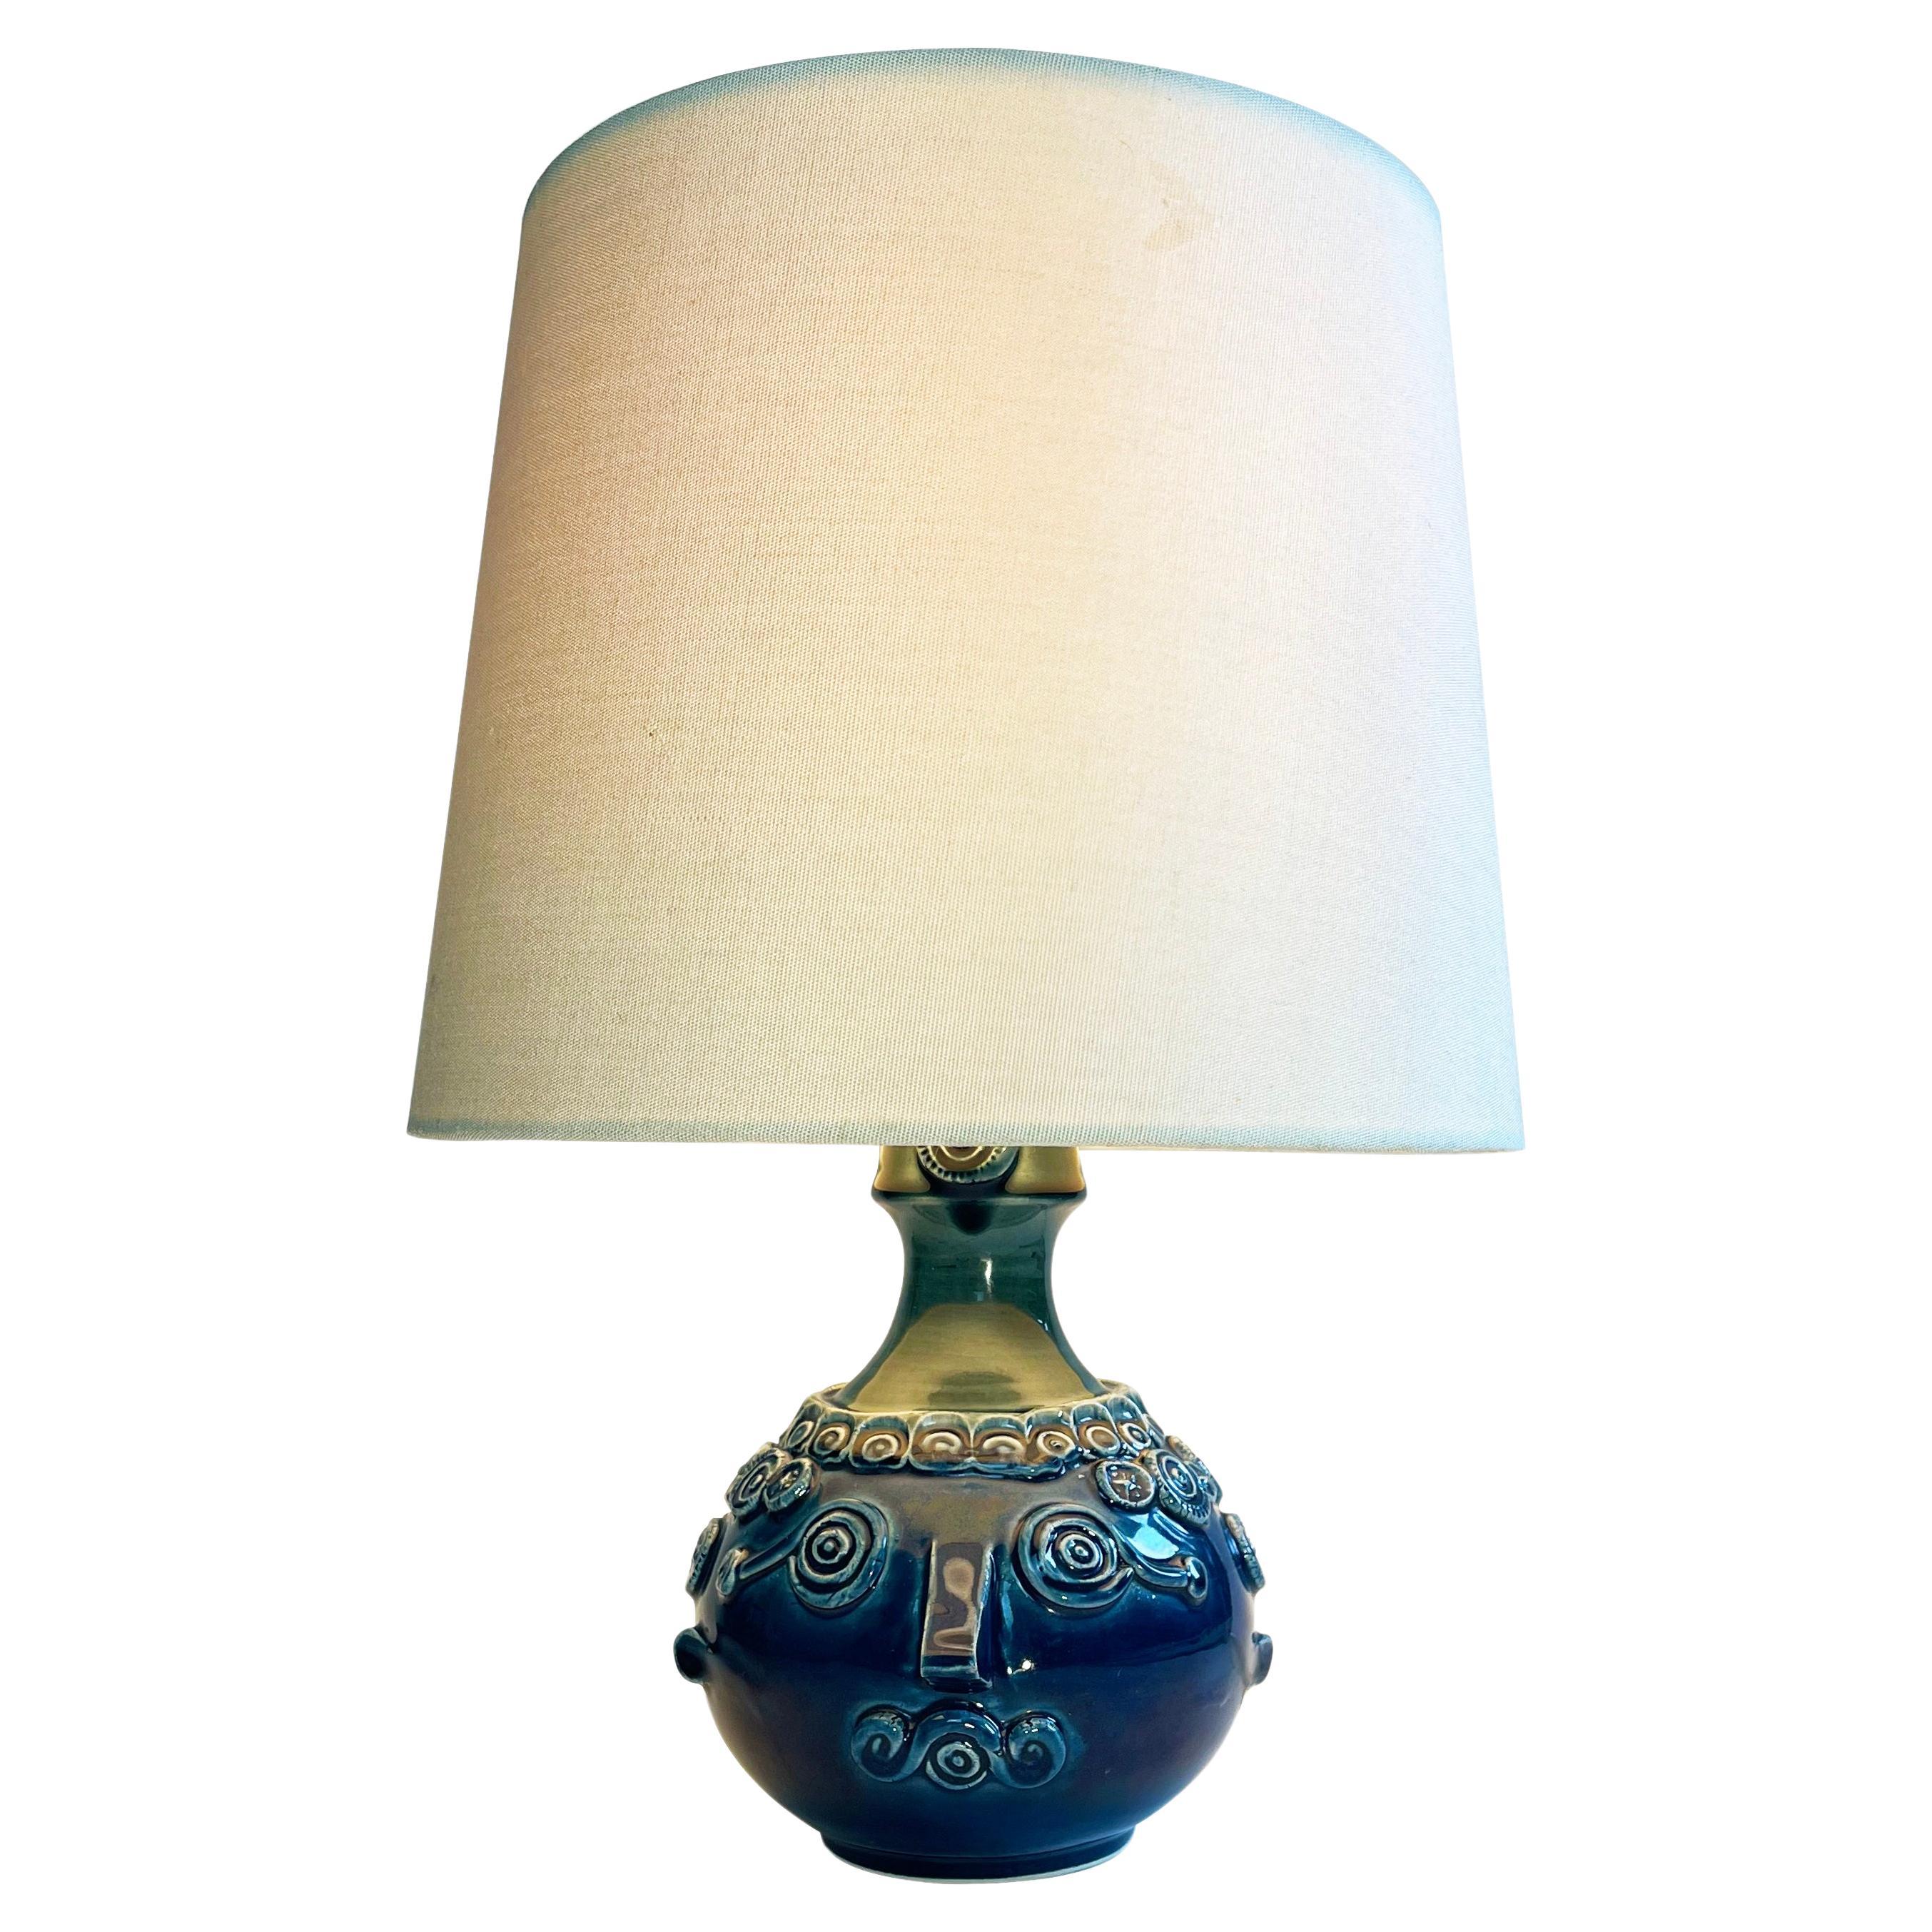 Rosenthal Blue Ceramic Table Lamp by Bjørn Wiinblad Studio Line, 1960s For Sale